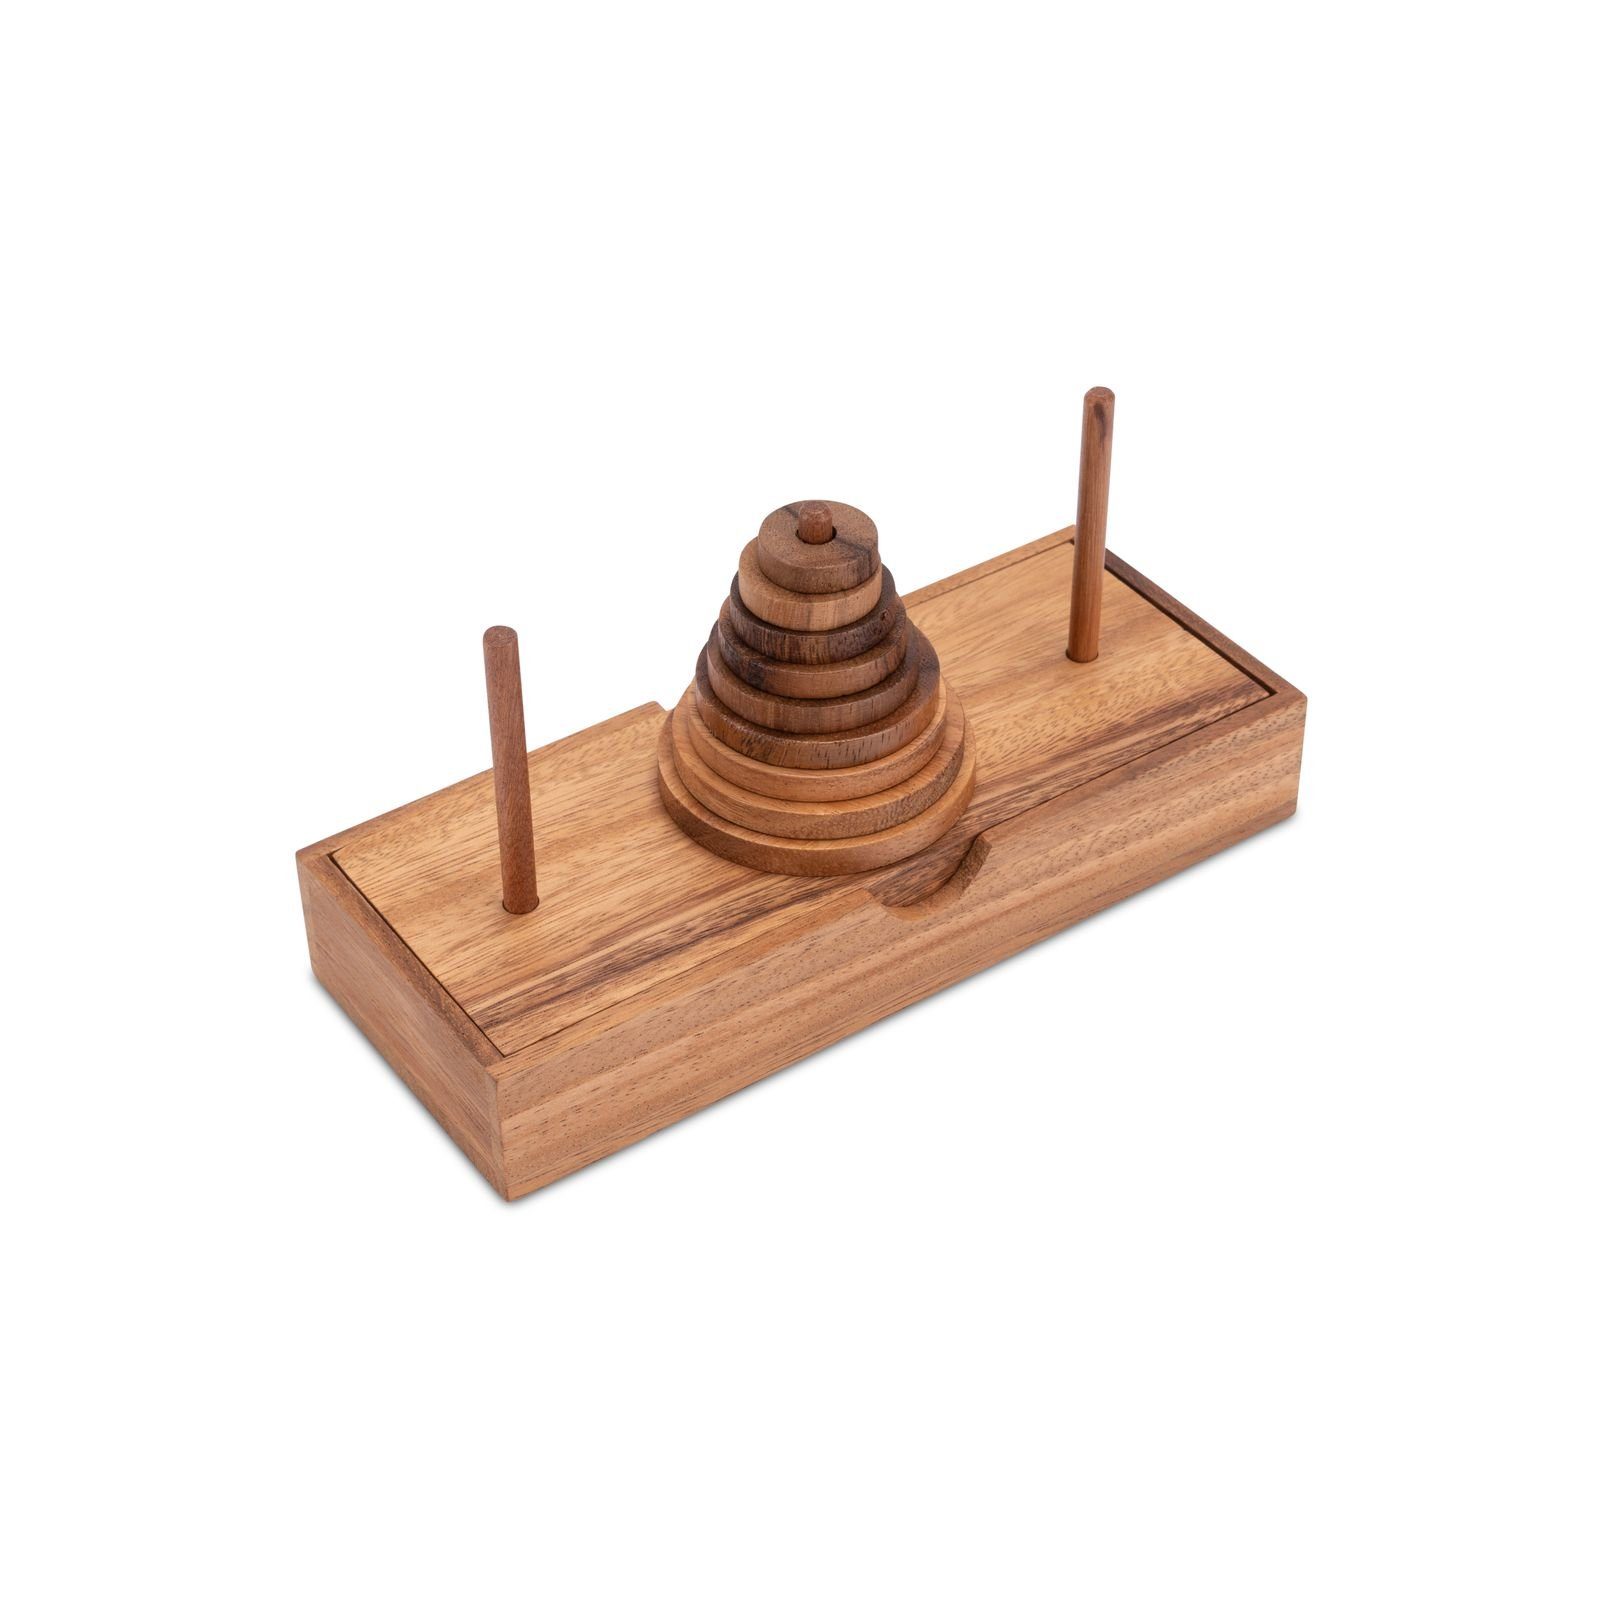 Logoplay Holzspiele Spiel, Pagoda - Turm von Hanoi - Denkspiel - Logikspiel mit 9 HolzscheibenHolzspielzeug